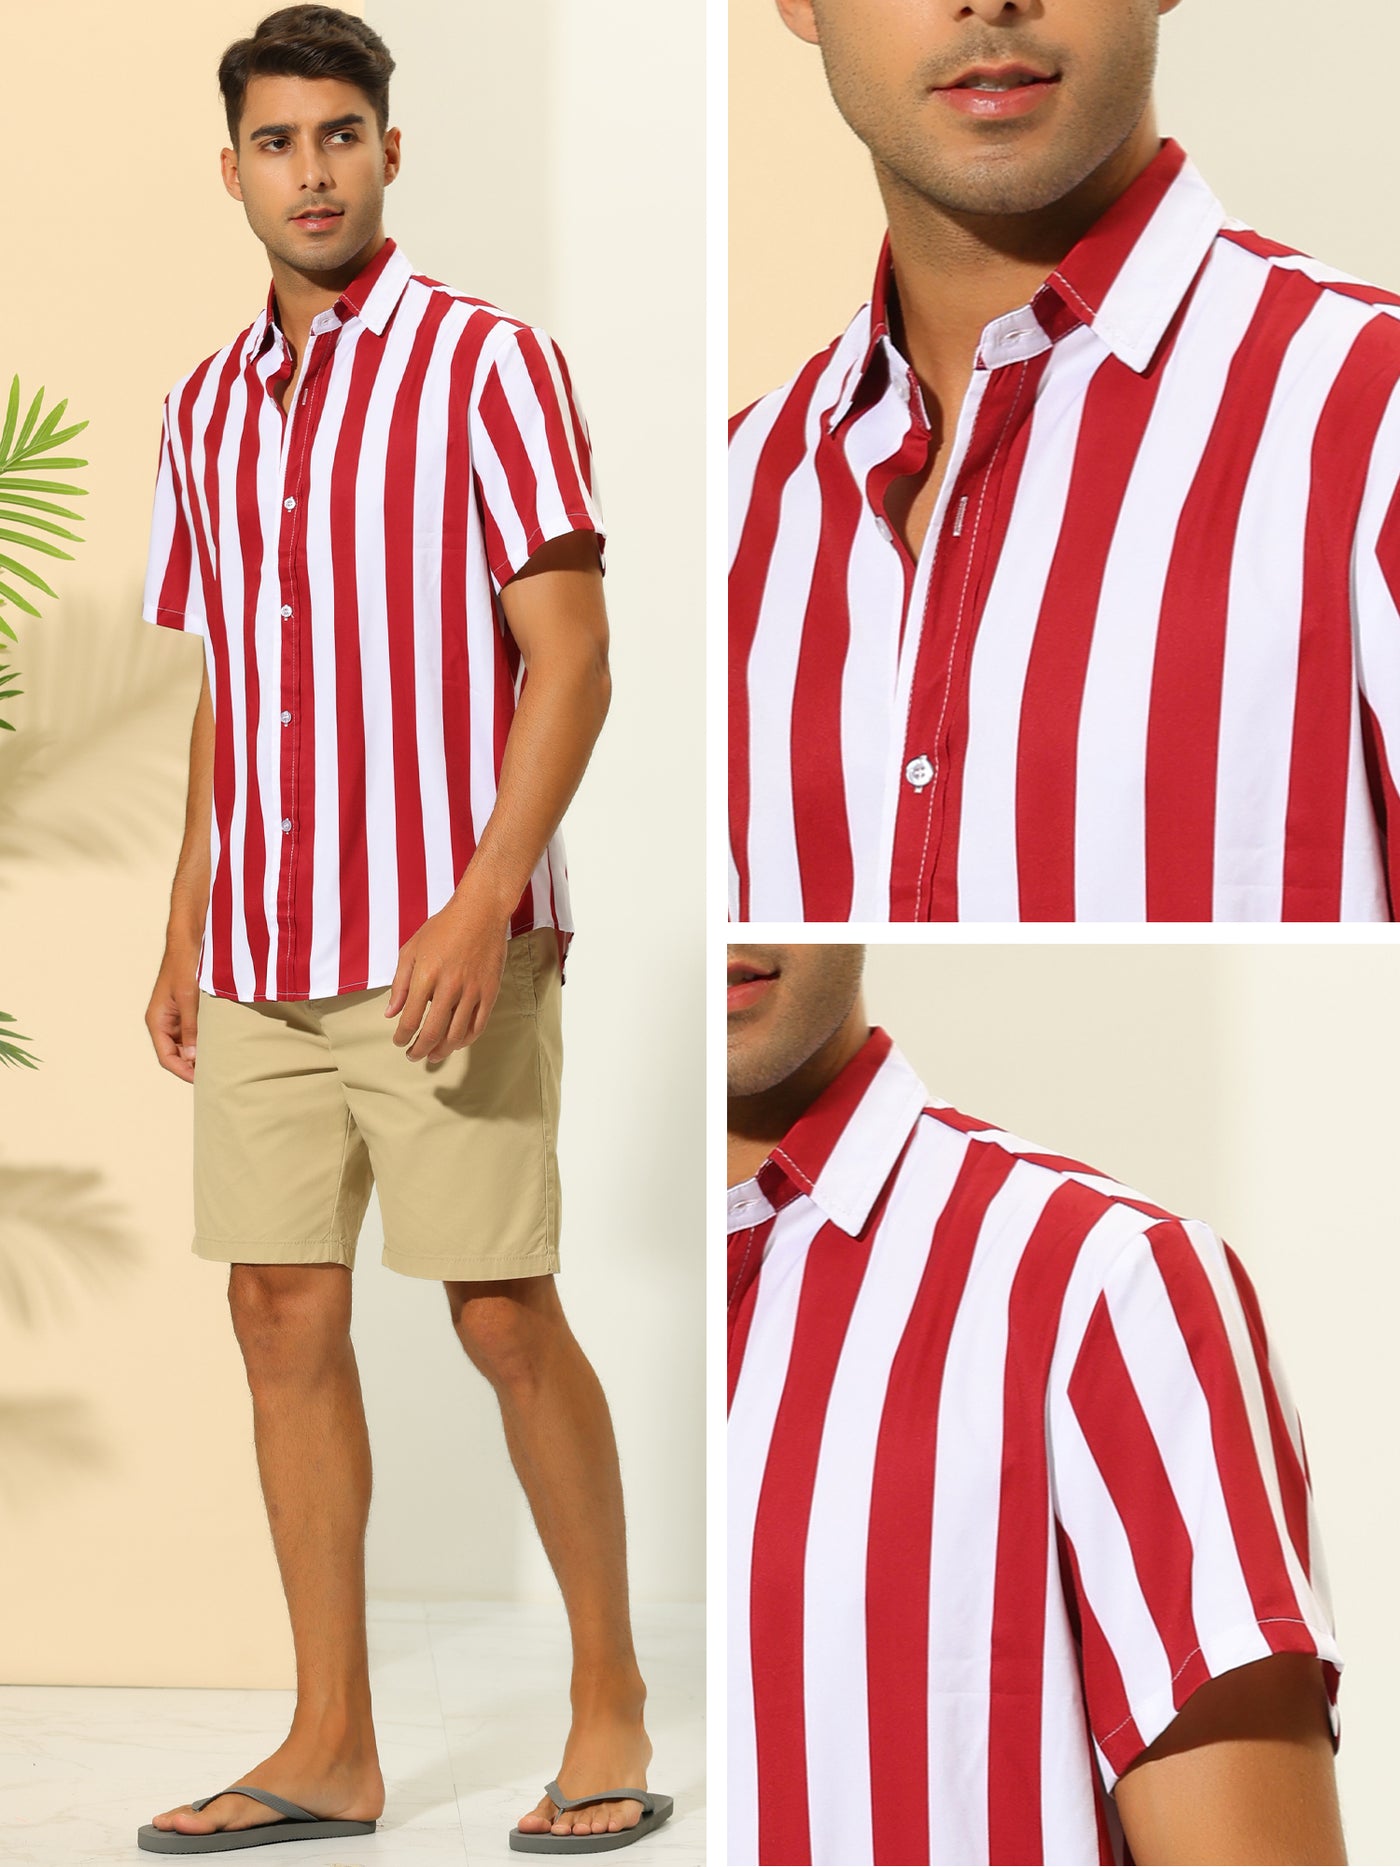 Bublédon Striped Shirts for Men's Summer Regular Fit Short Sleeves Button Down Hawaiian Shirt